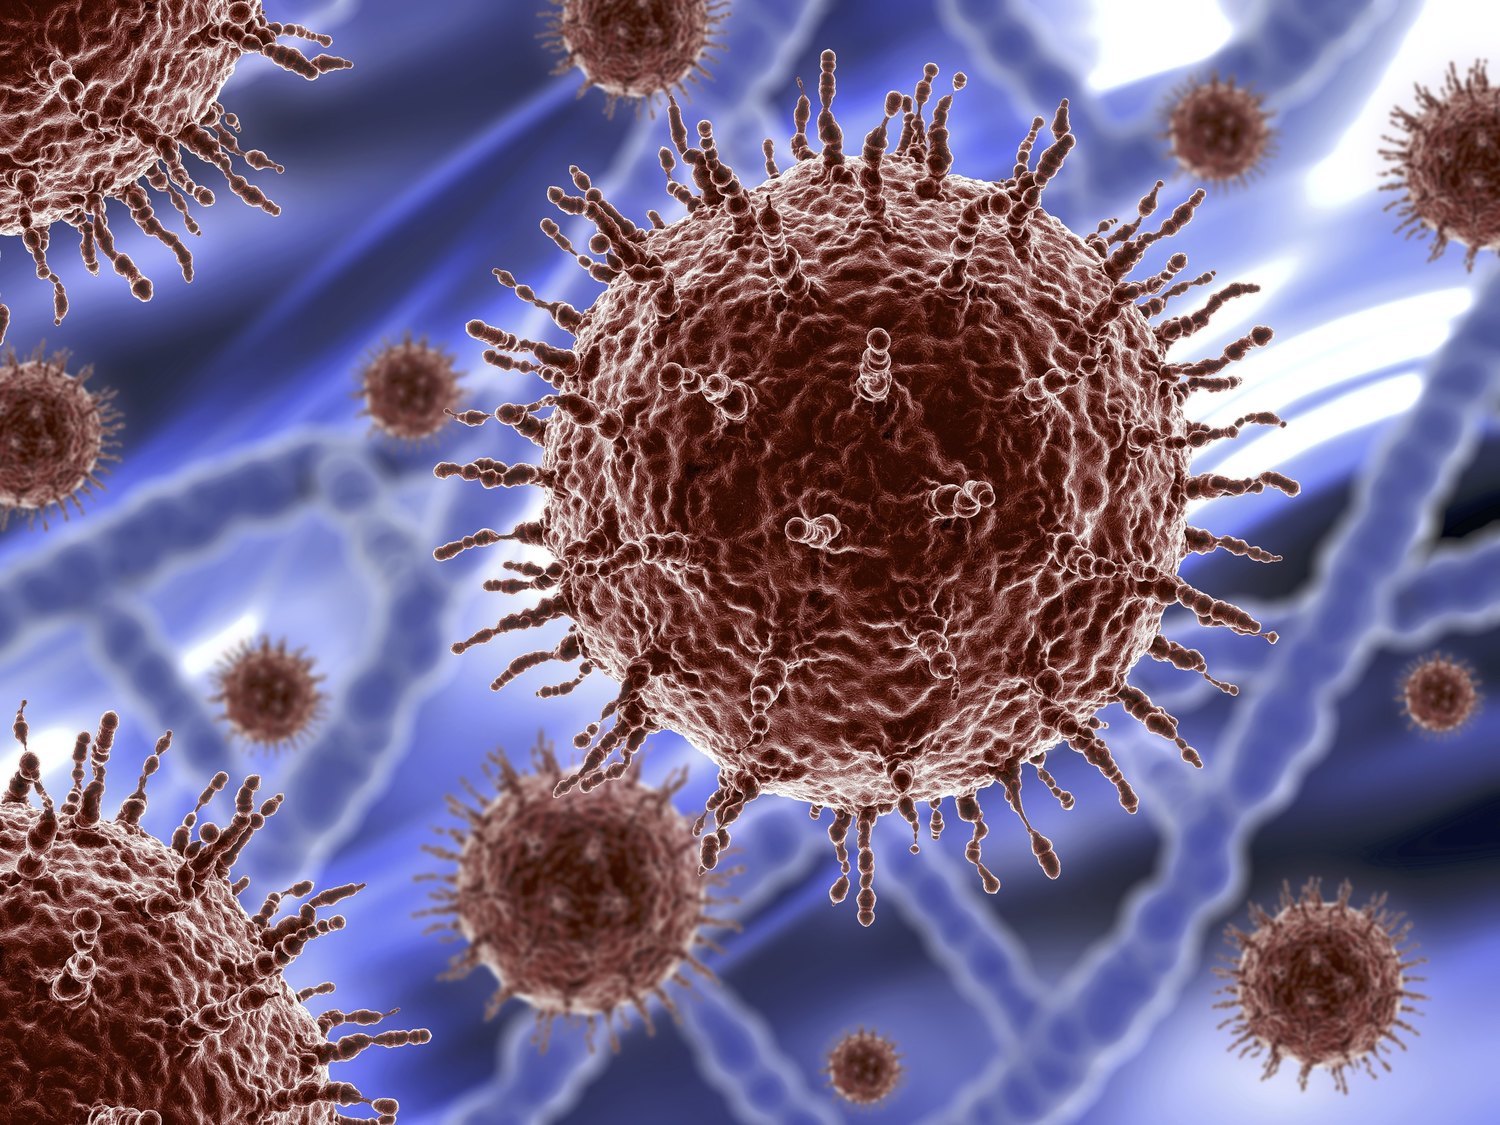 La verdad sobre el norovirus: todo lo que debes saber sobre el último virus que "alarma" en China